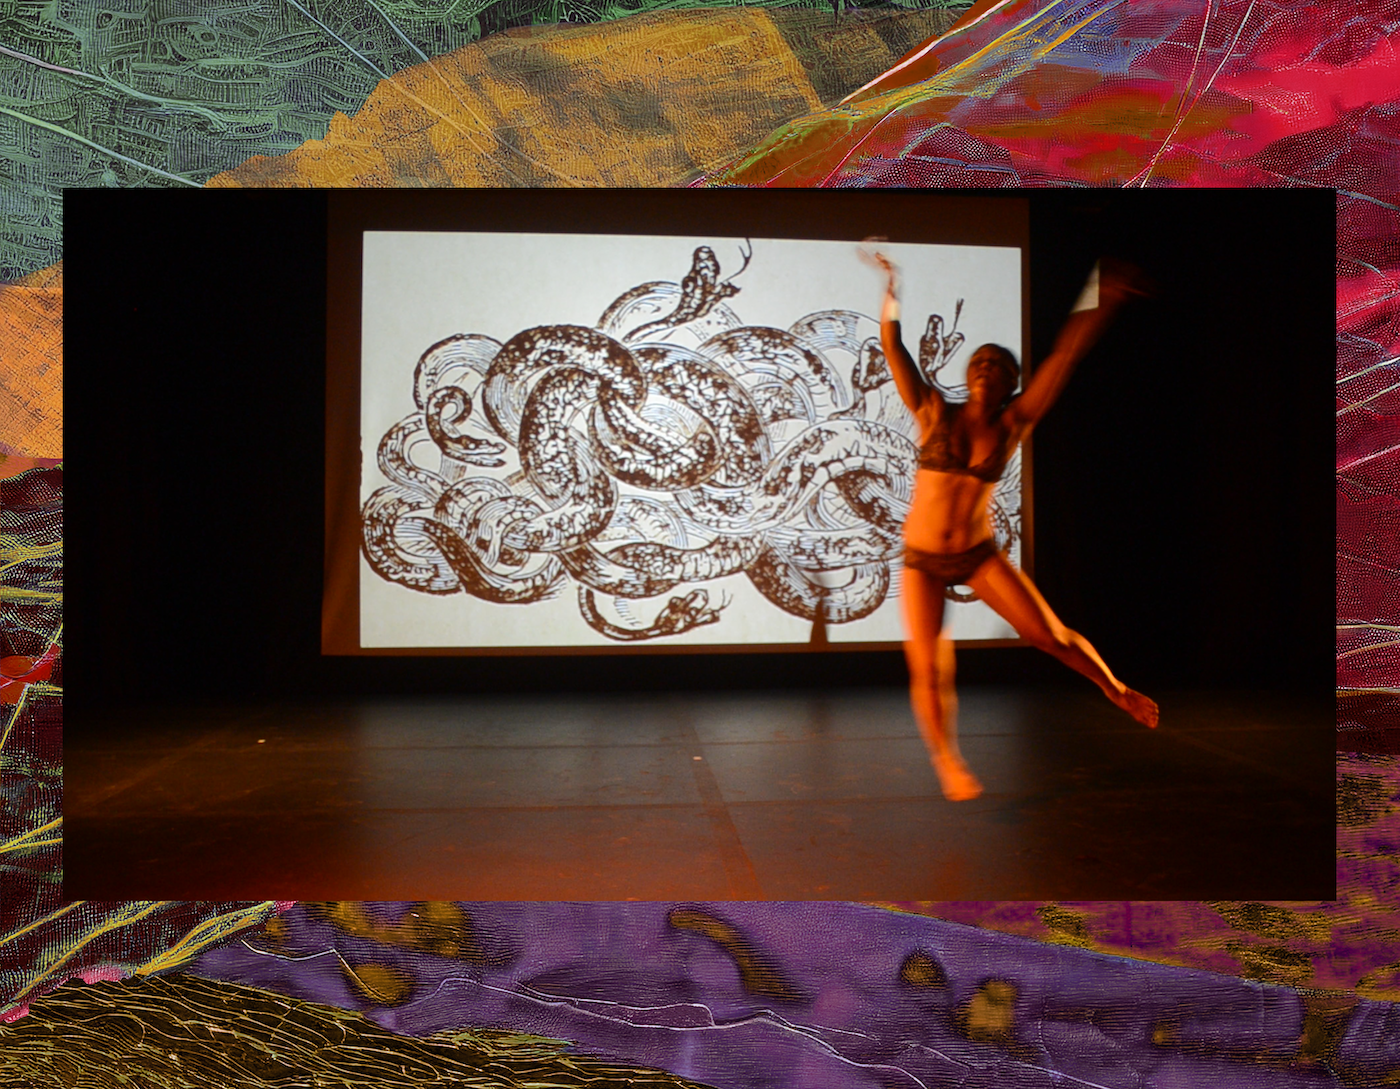 Texte alternatif en allemand : Une danseuse devant une projection de dessins de serpents. Texte alternatif en anglais : Un danseur devant une projection de dessins de serpents.